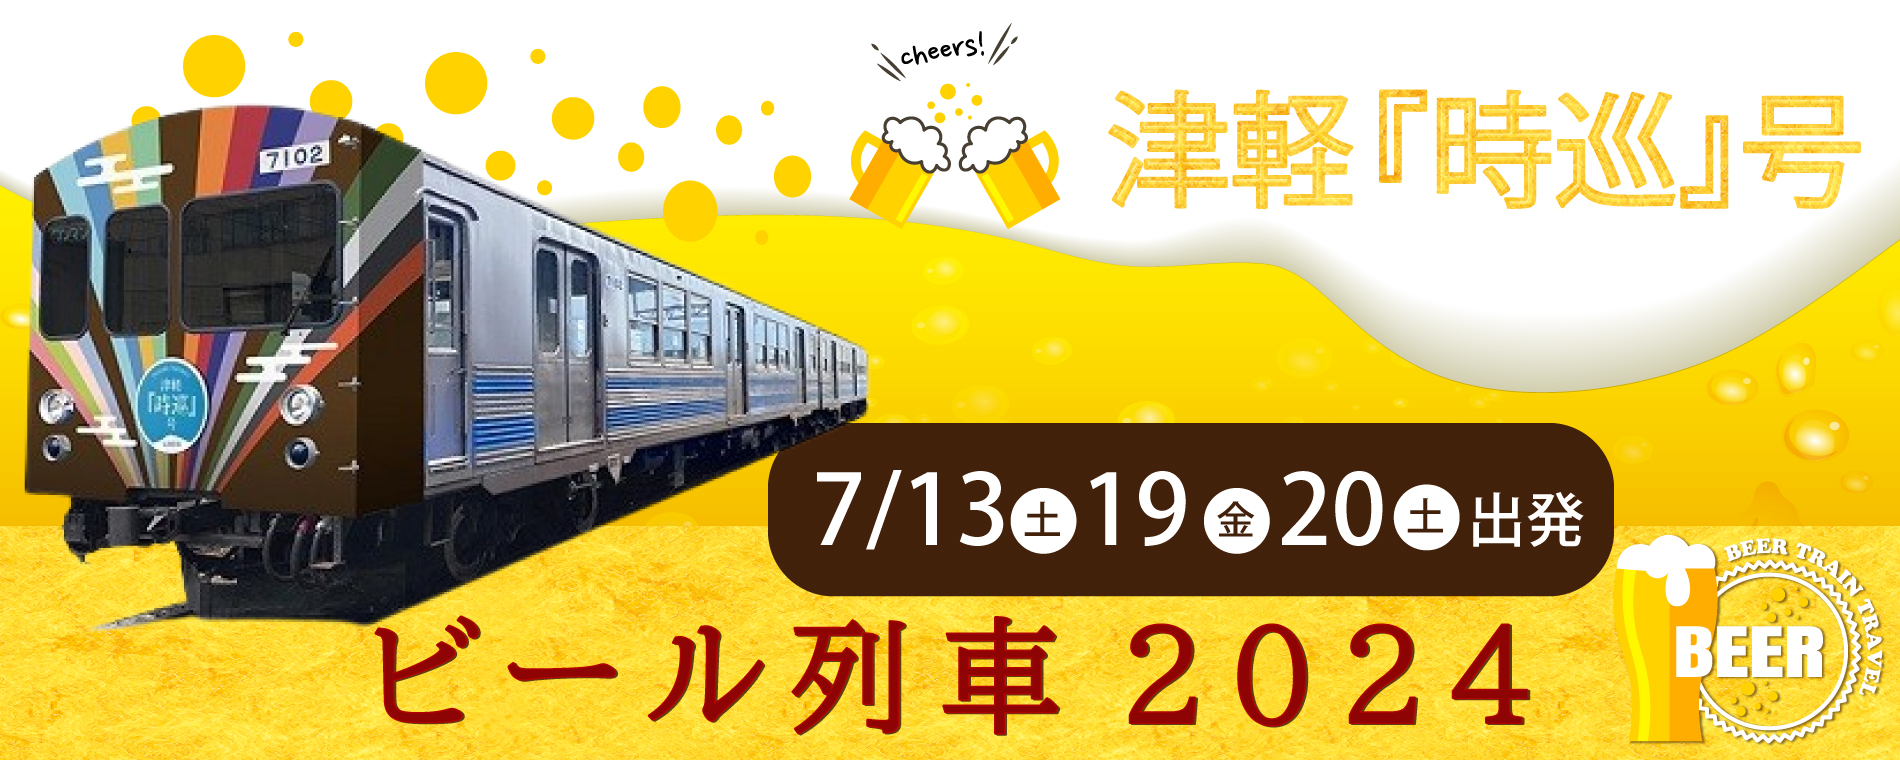 『津軽 時巡号』ビール列車2024